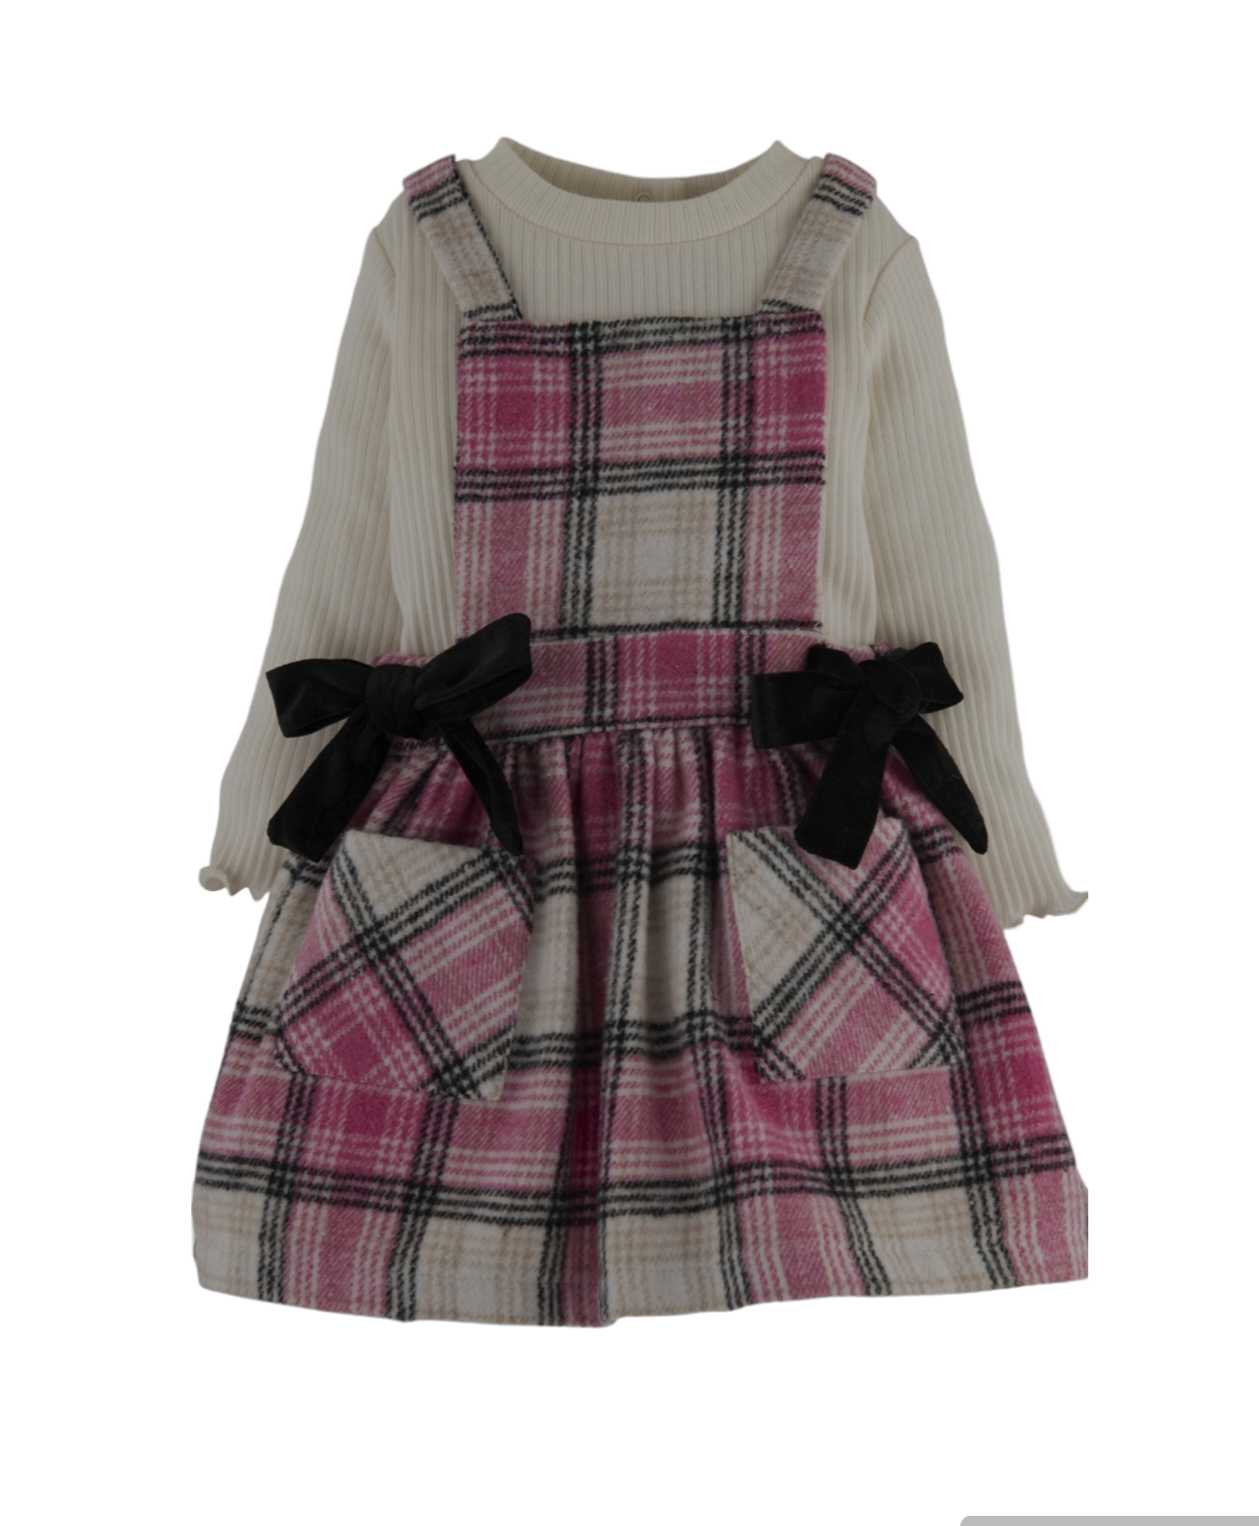 MambPlaid Baby Dress - 2PC